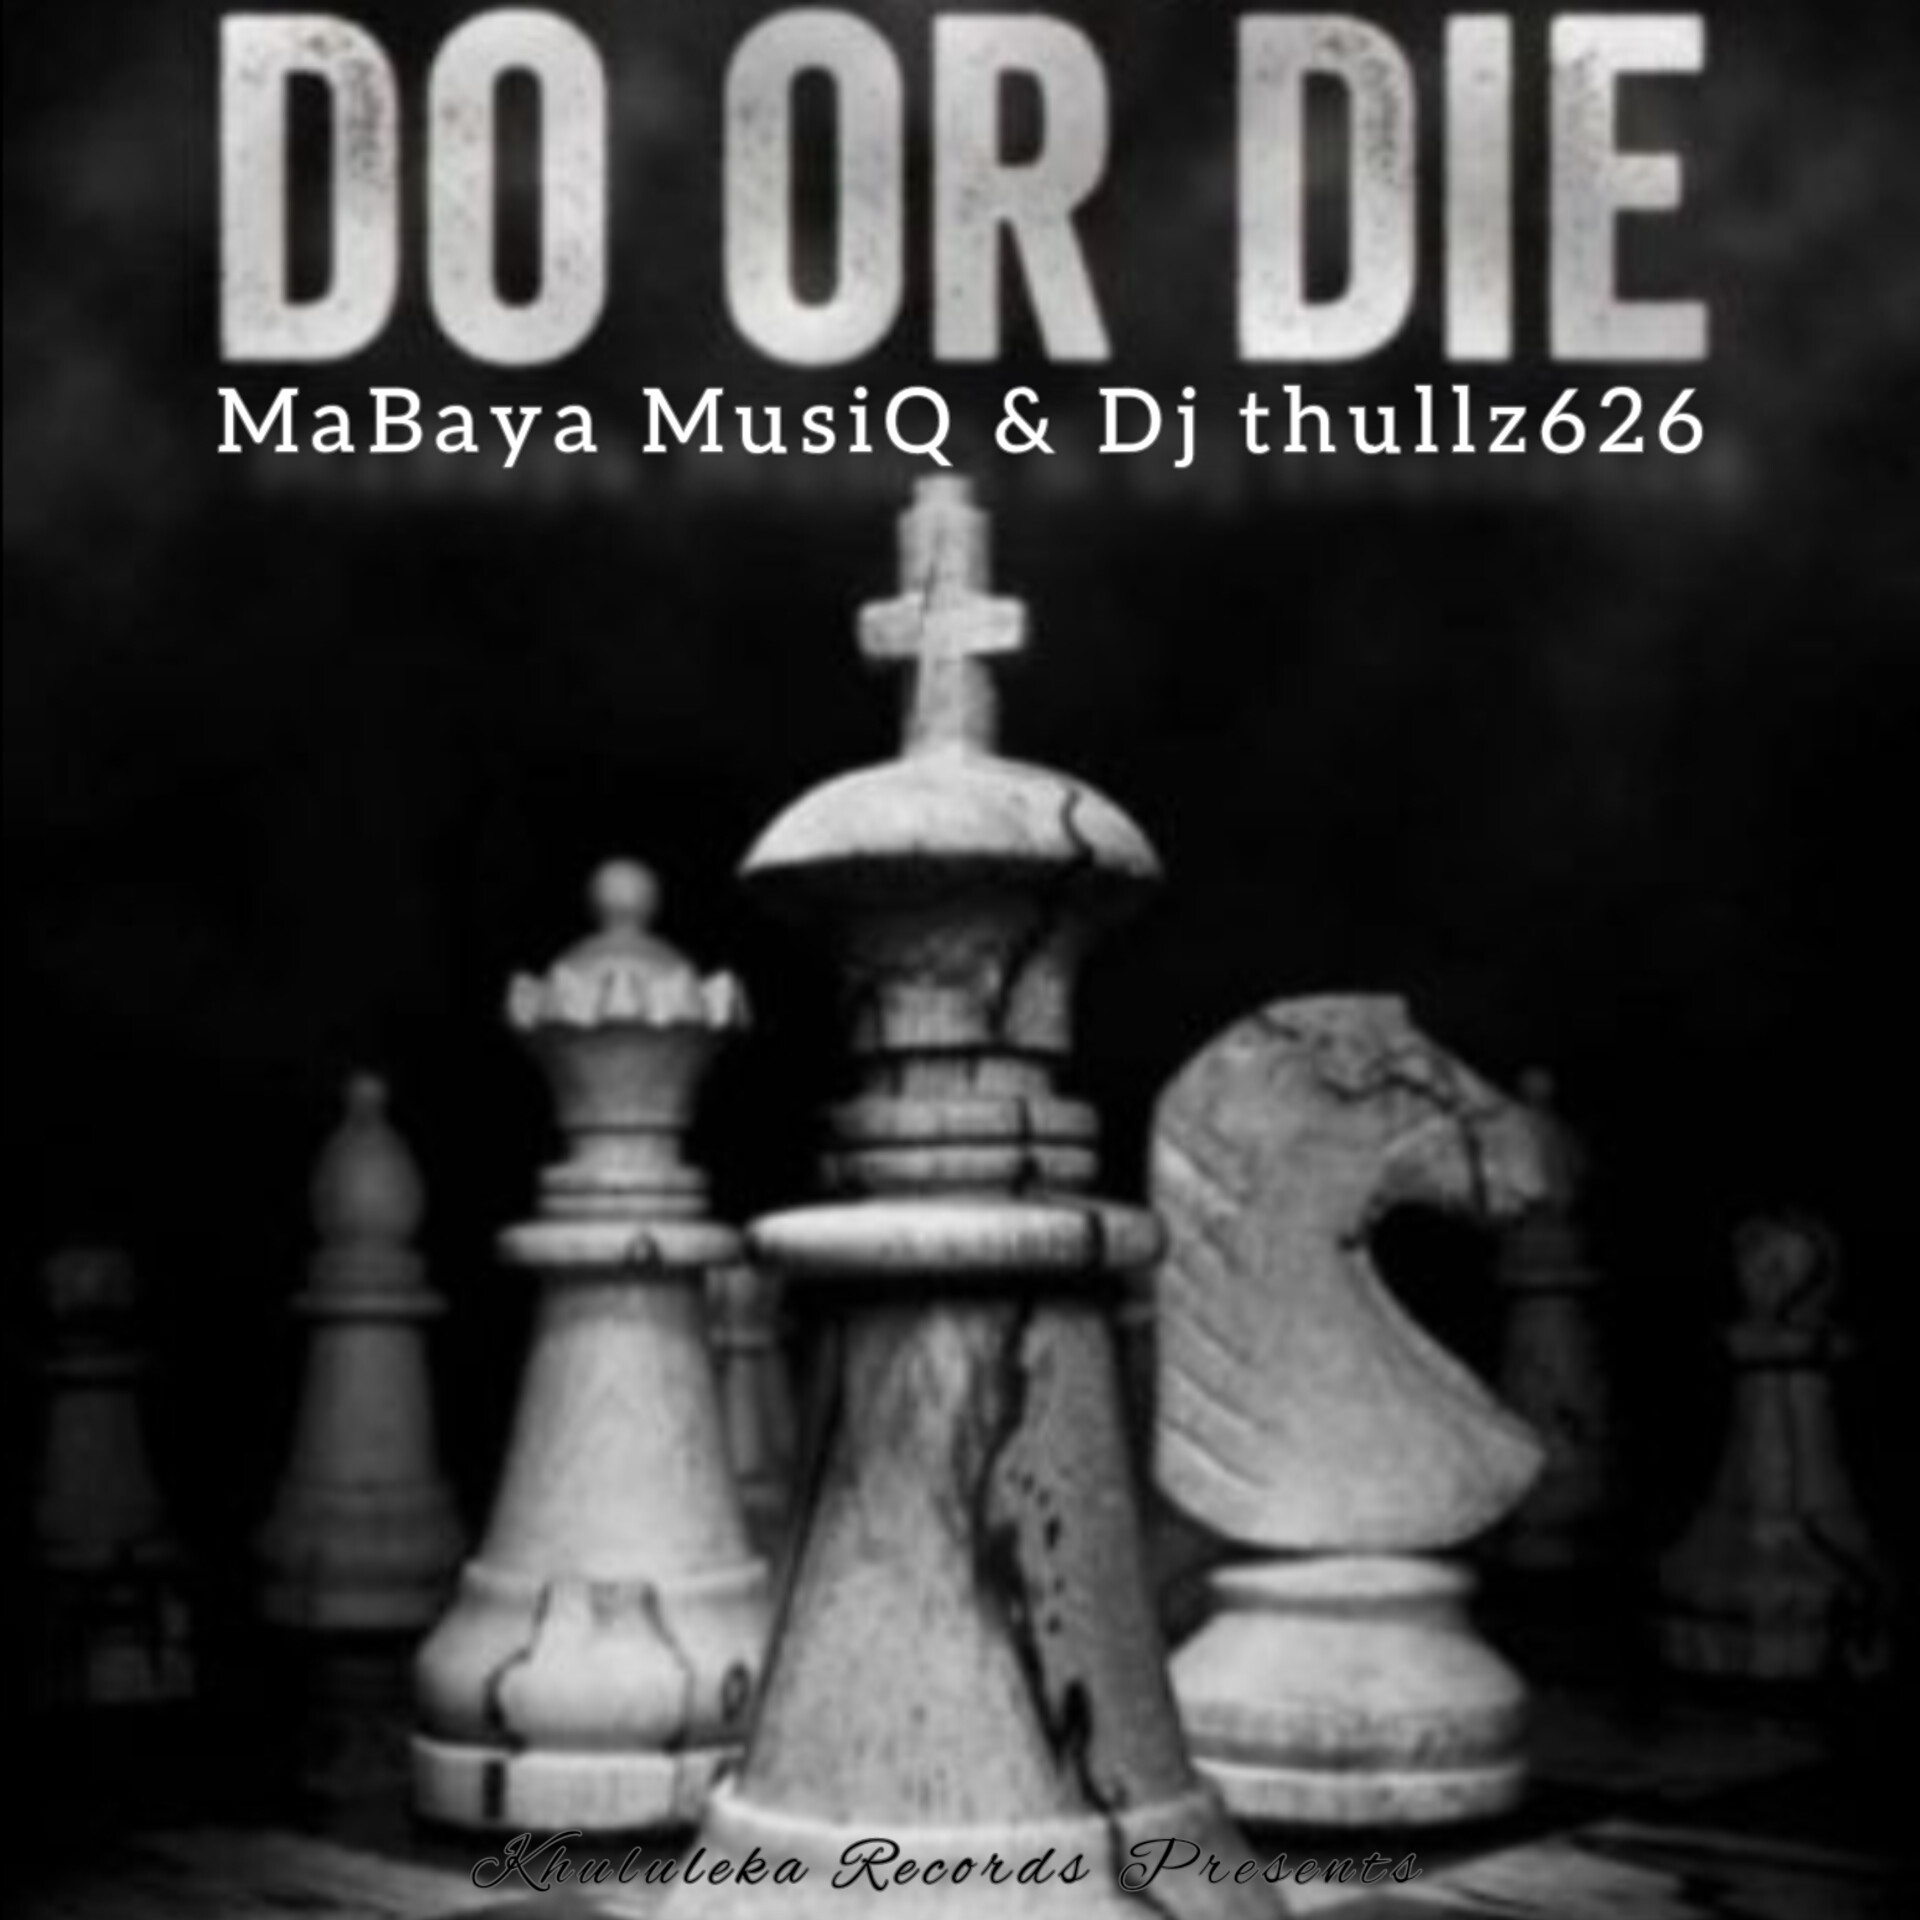 Do Or Die - MaBaya MusiQ & Dj thullz626